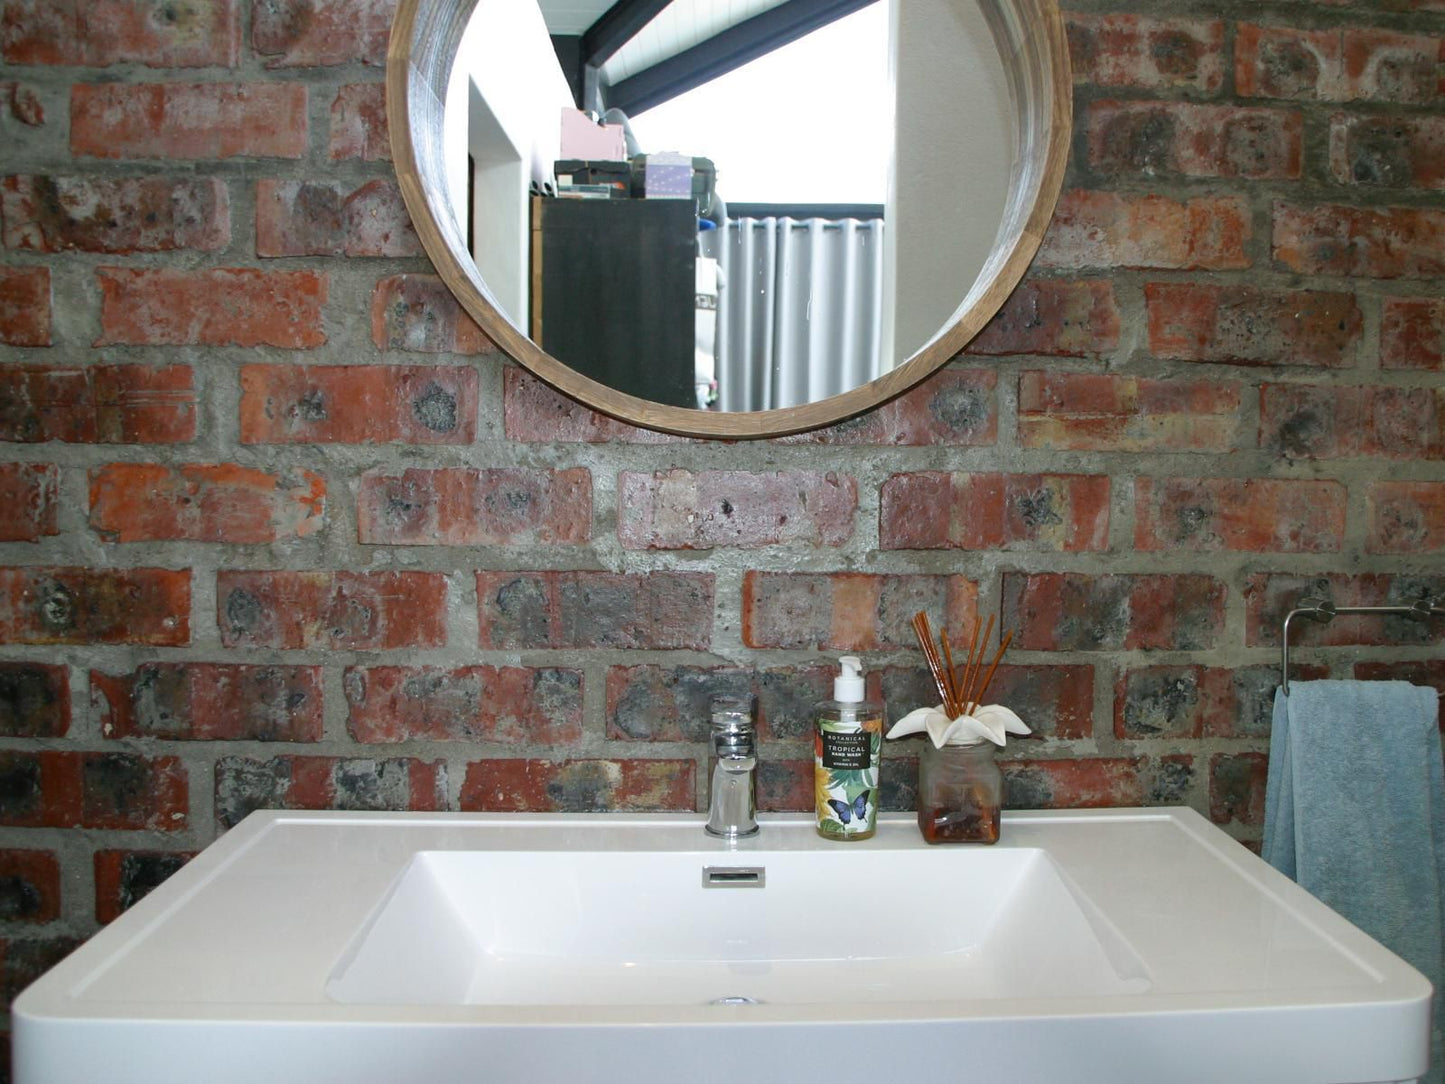 Eerstebosch Lyndoch Stellenbosch Stellenbosch Western Cape South Africa Bathroom